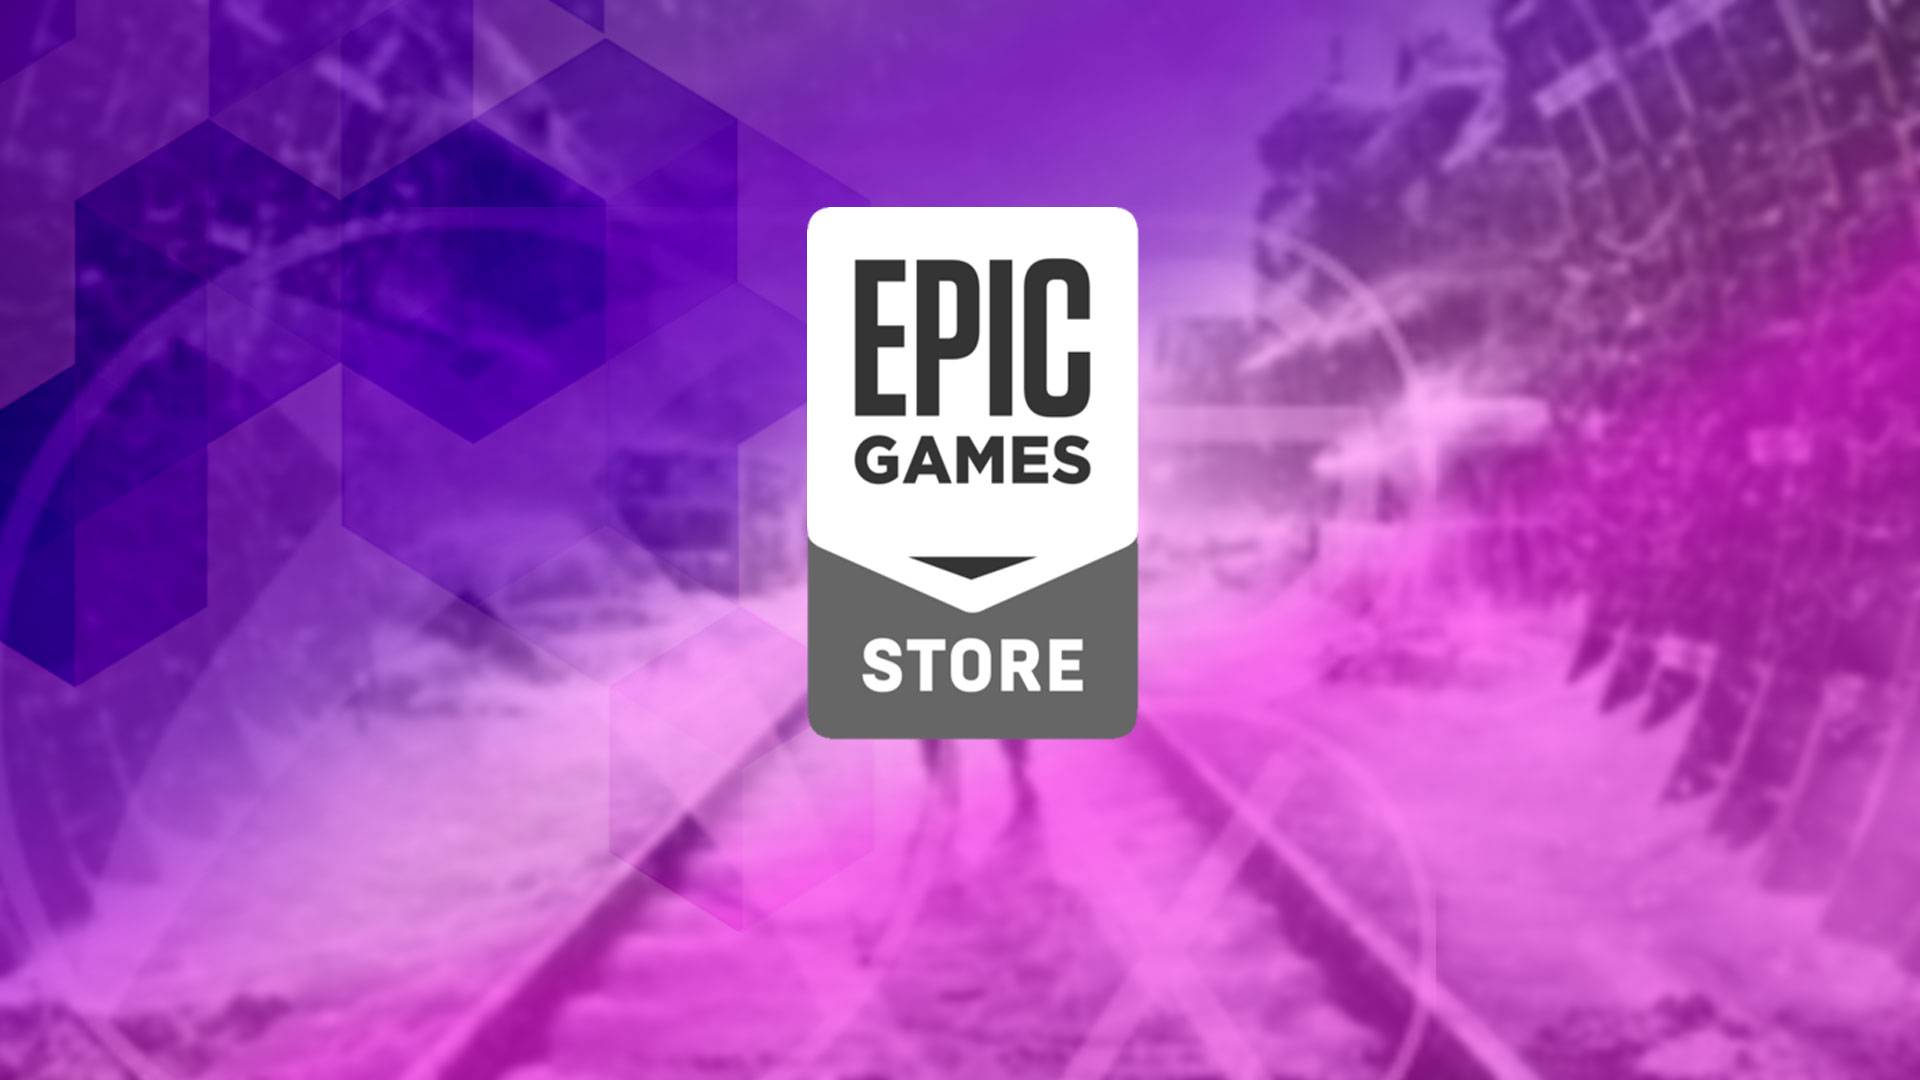 Epic Games gelecek hafta 2 oyunu ücretsiz dağıtacak! İşte o oyunlar